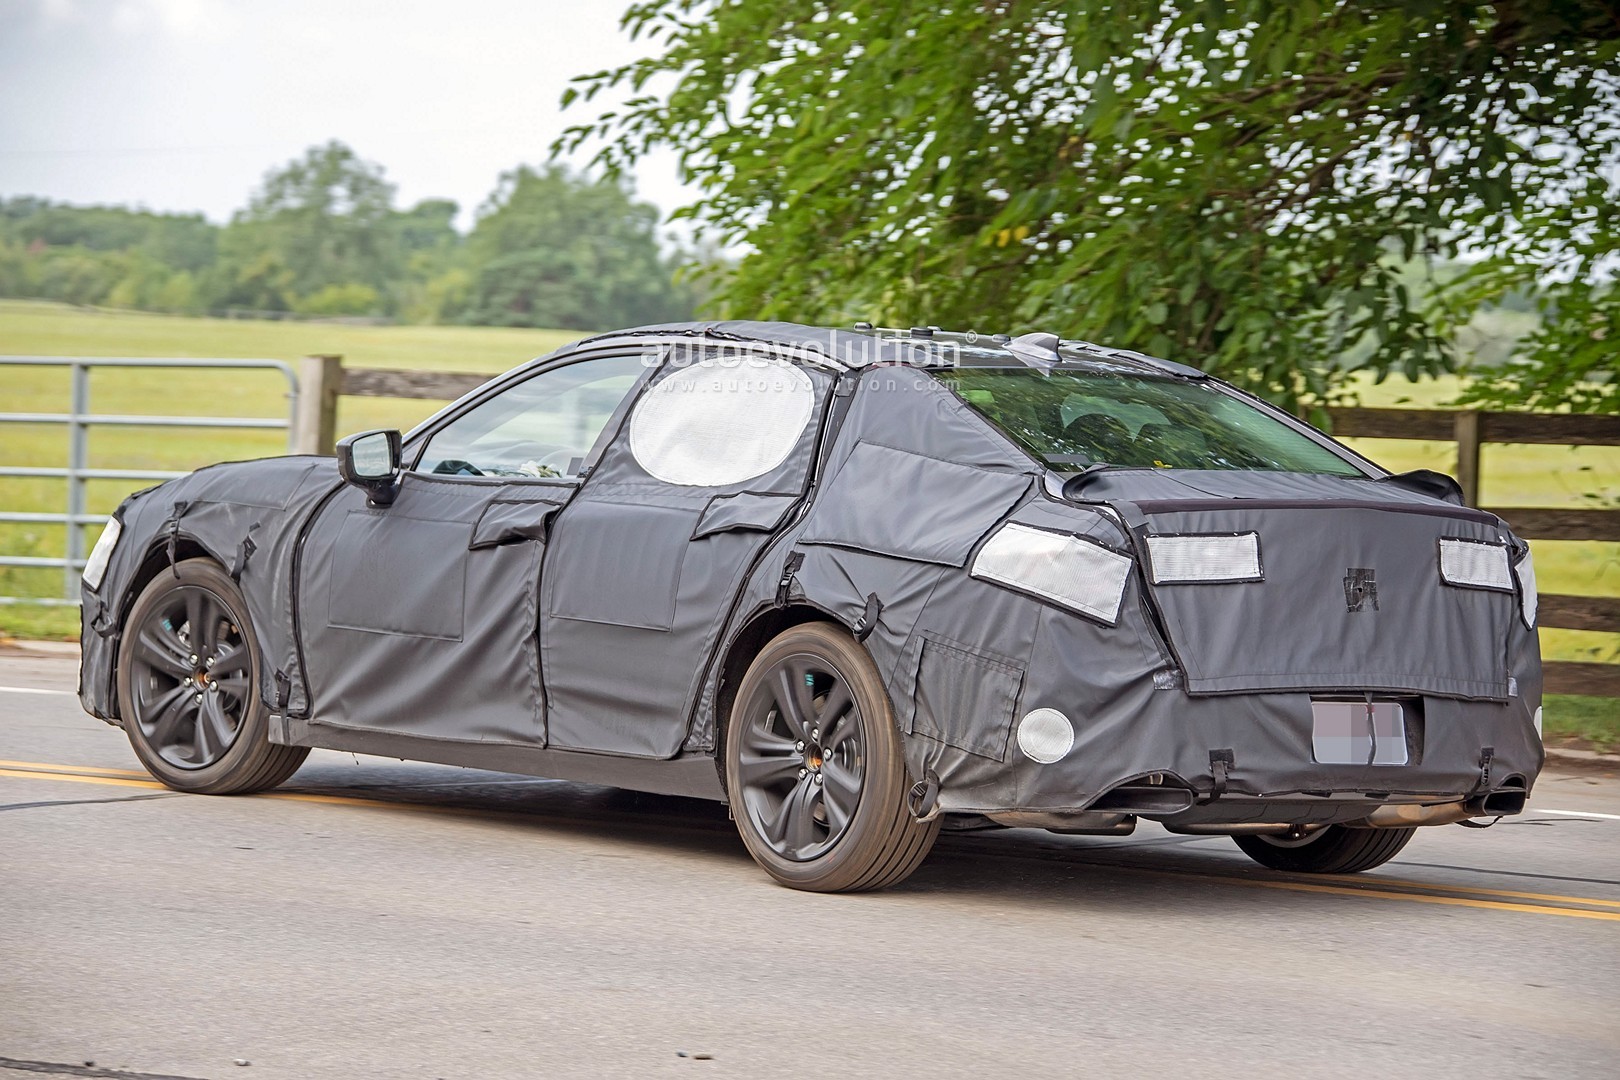 2021 Acura Tlx Sedan Spied Testing Looks Like Type S